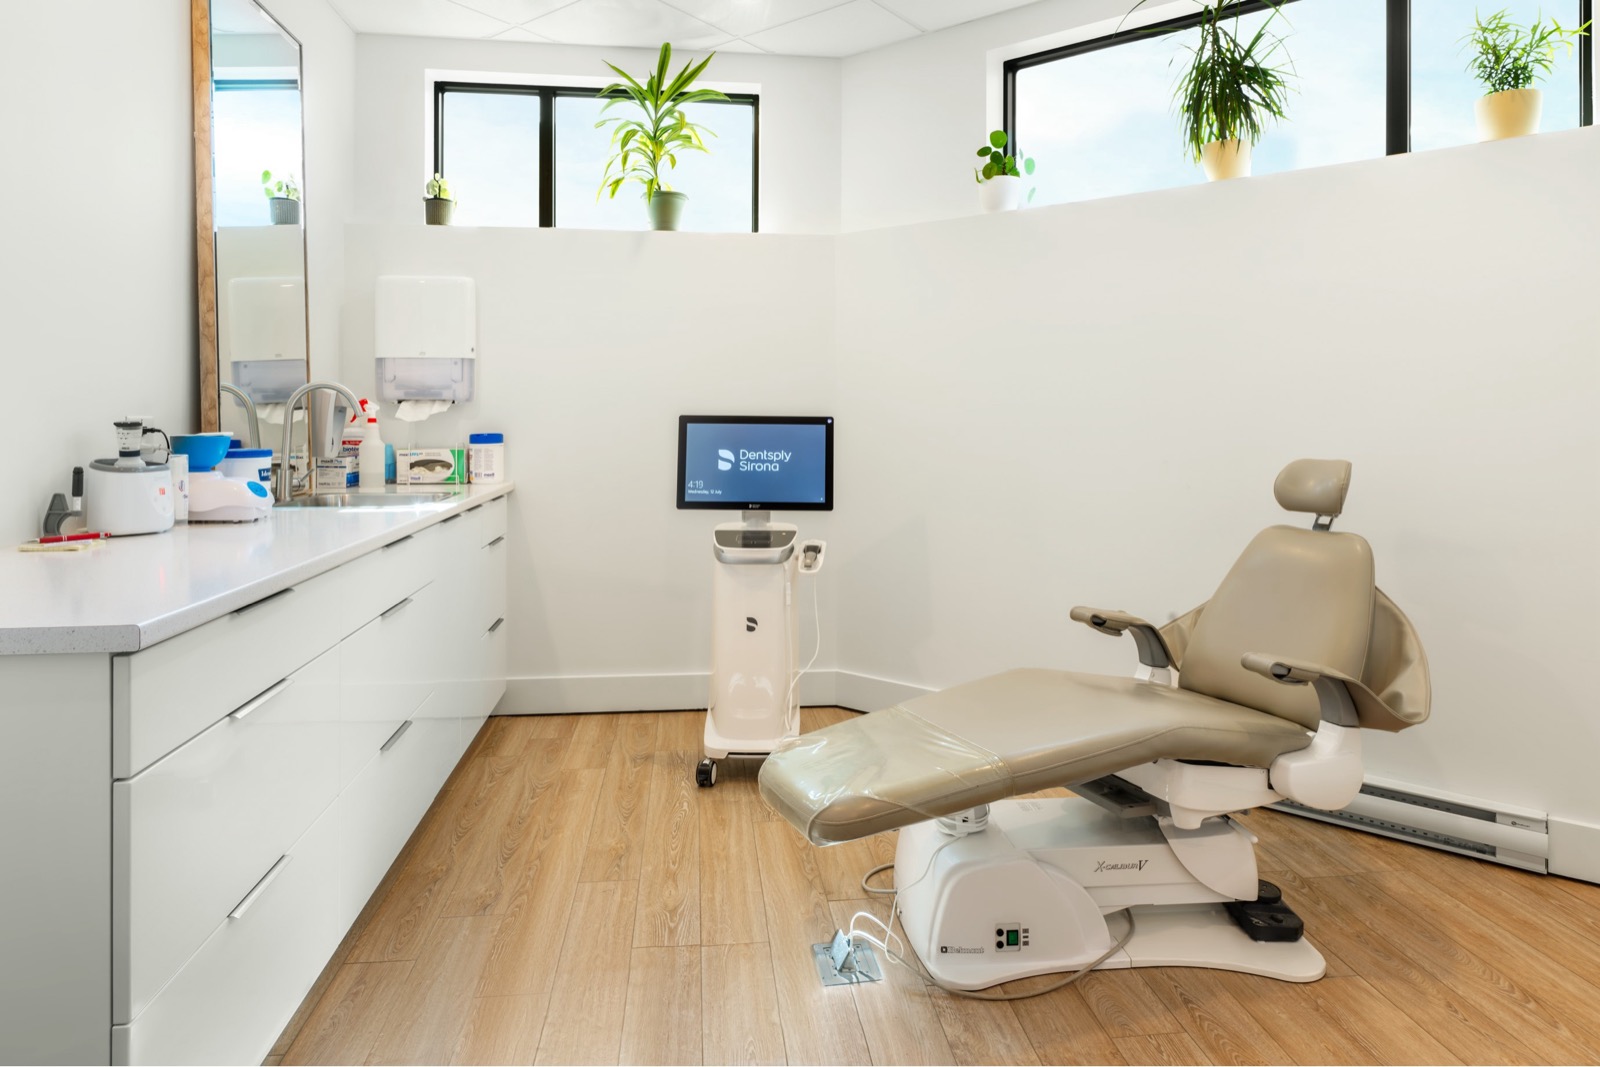 Denture examination room